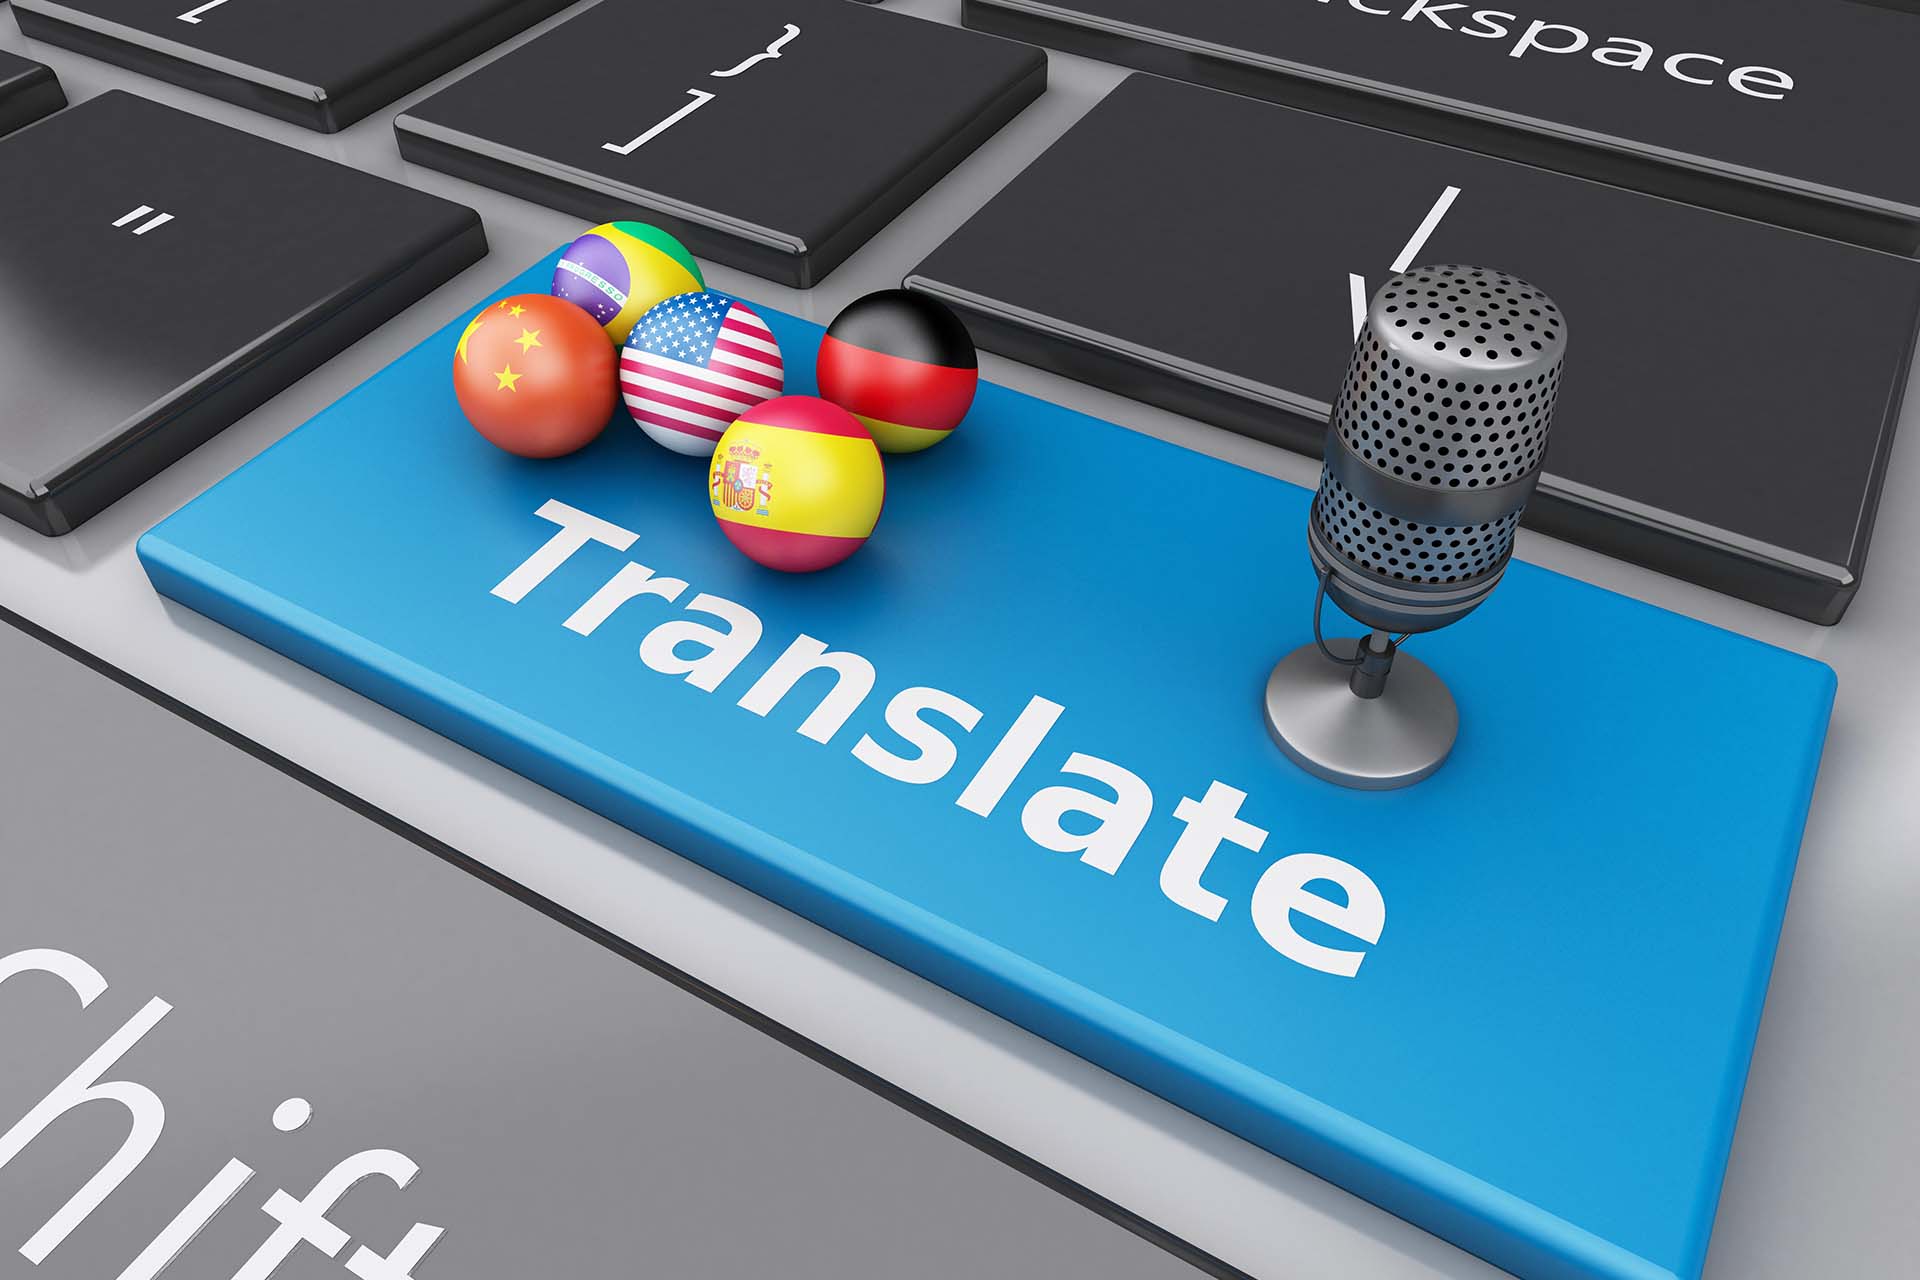 La traduzione automatica è in costante evoluzione e in questi anni sta raggiungendo notevoli progressi